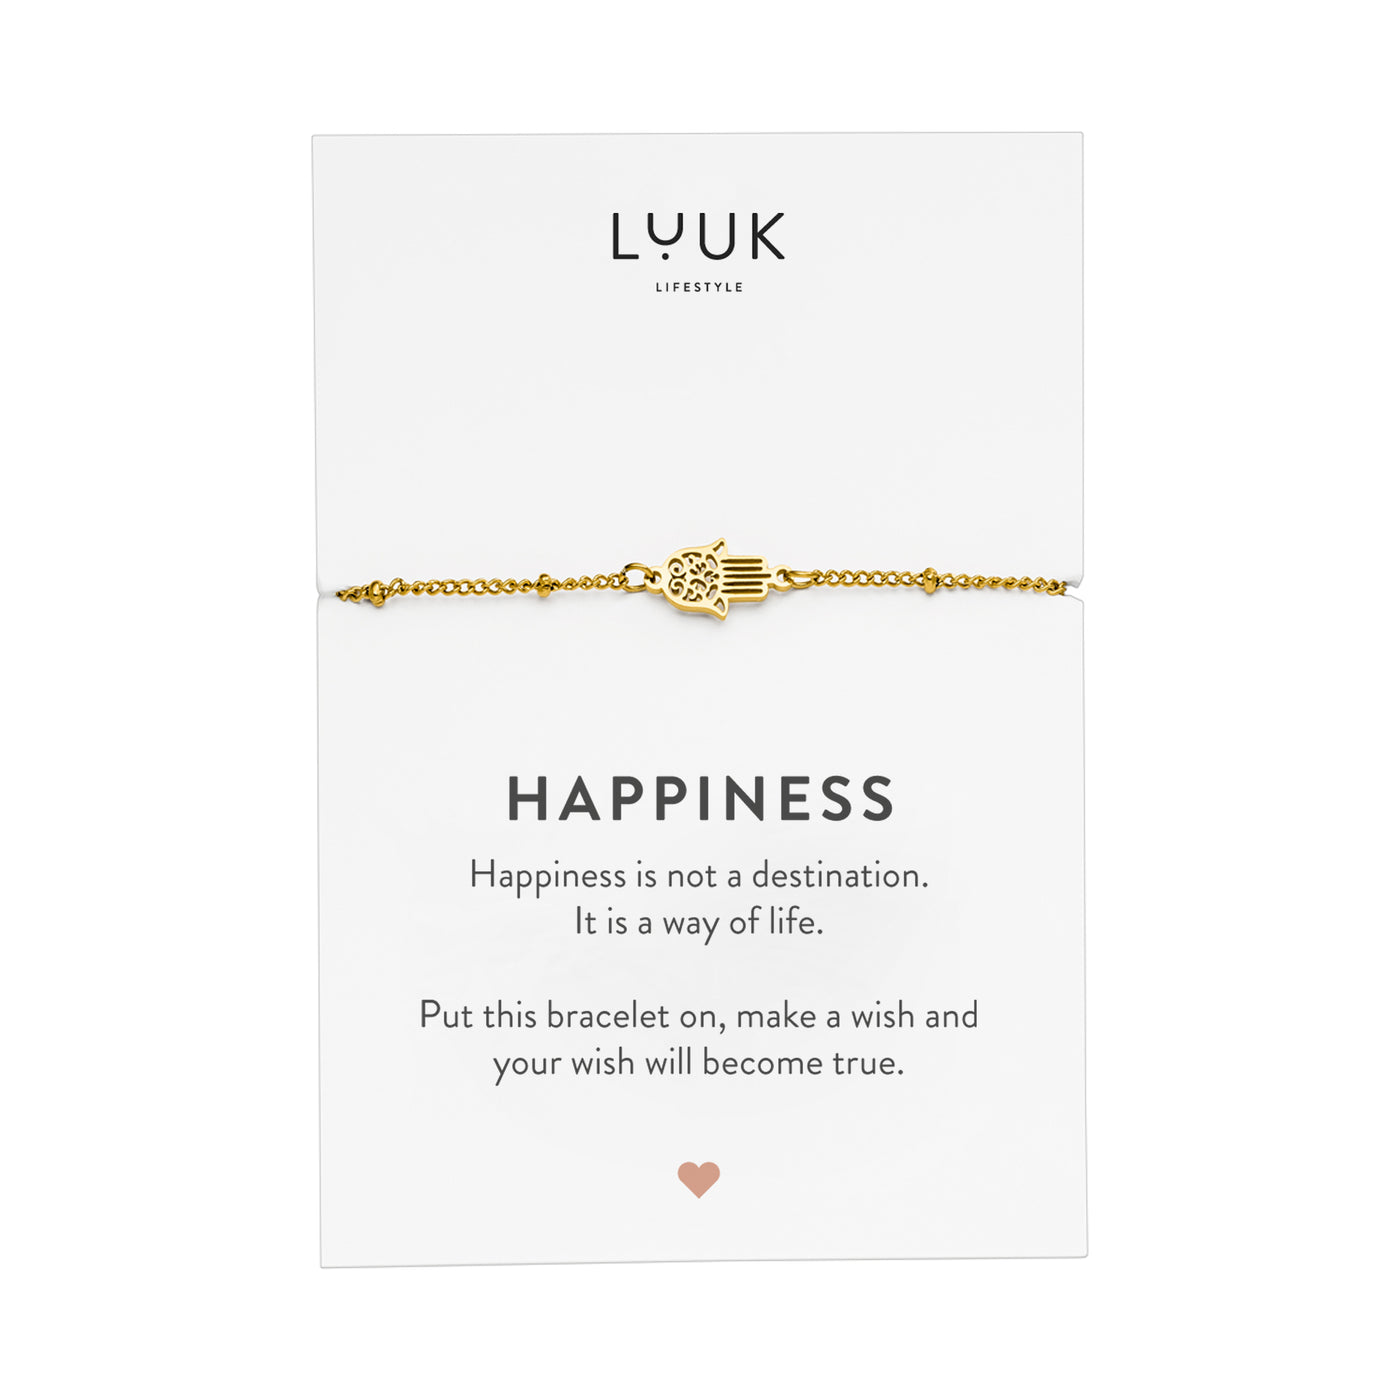 Gold Armband mit Hamsa Hand Anhänger aus Edelstahl auf Happiness Spruchkarte von der Marke Luuk Lifestyle